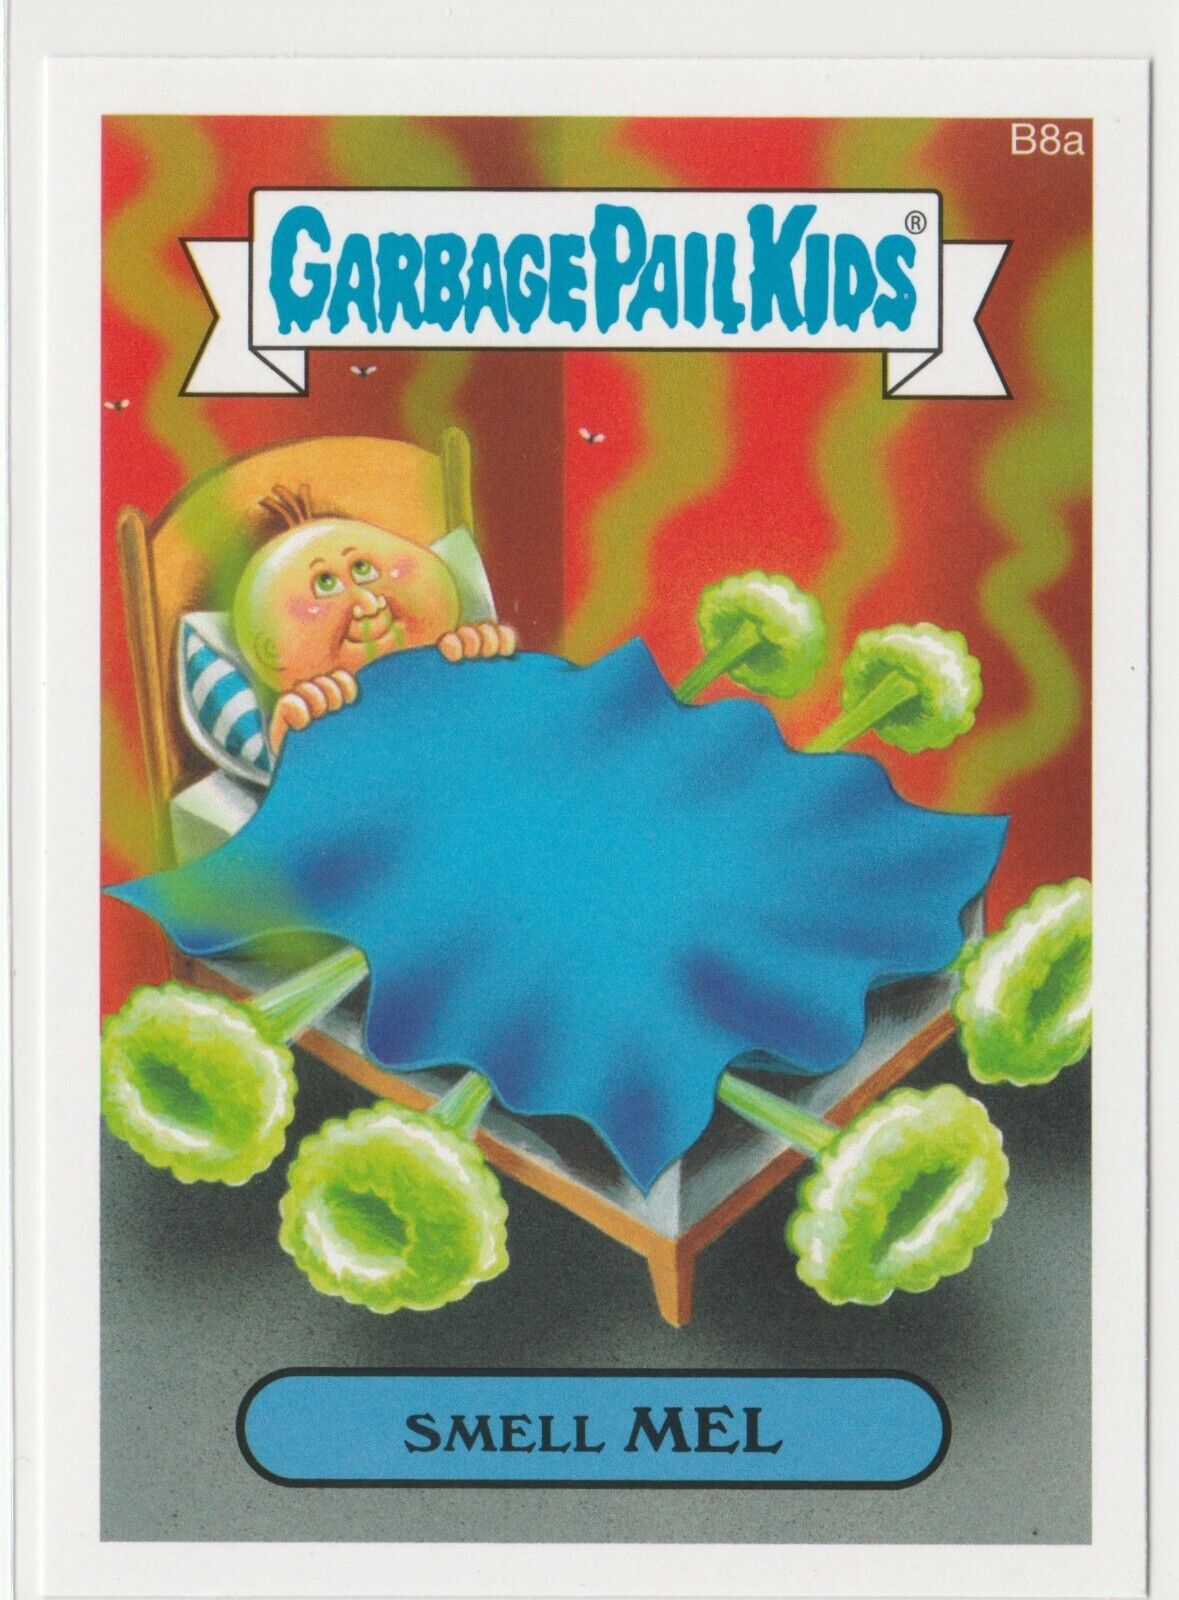 Garbage Pail Kids Smell Mel #B8a BONUS STICKER 2015 Series 1 GPK 3494